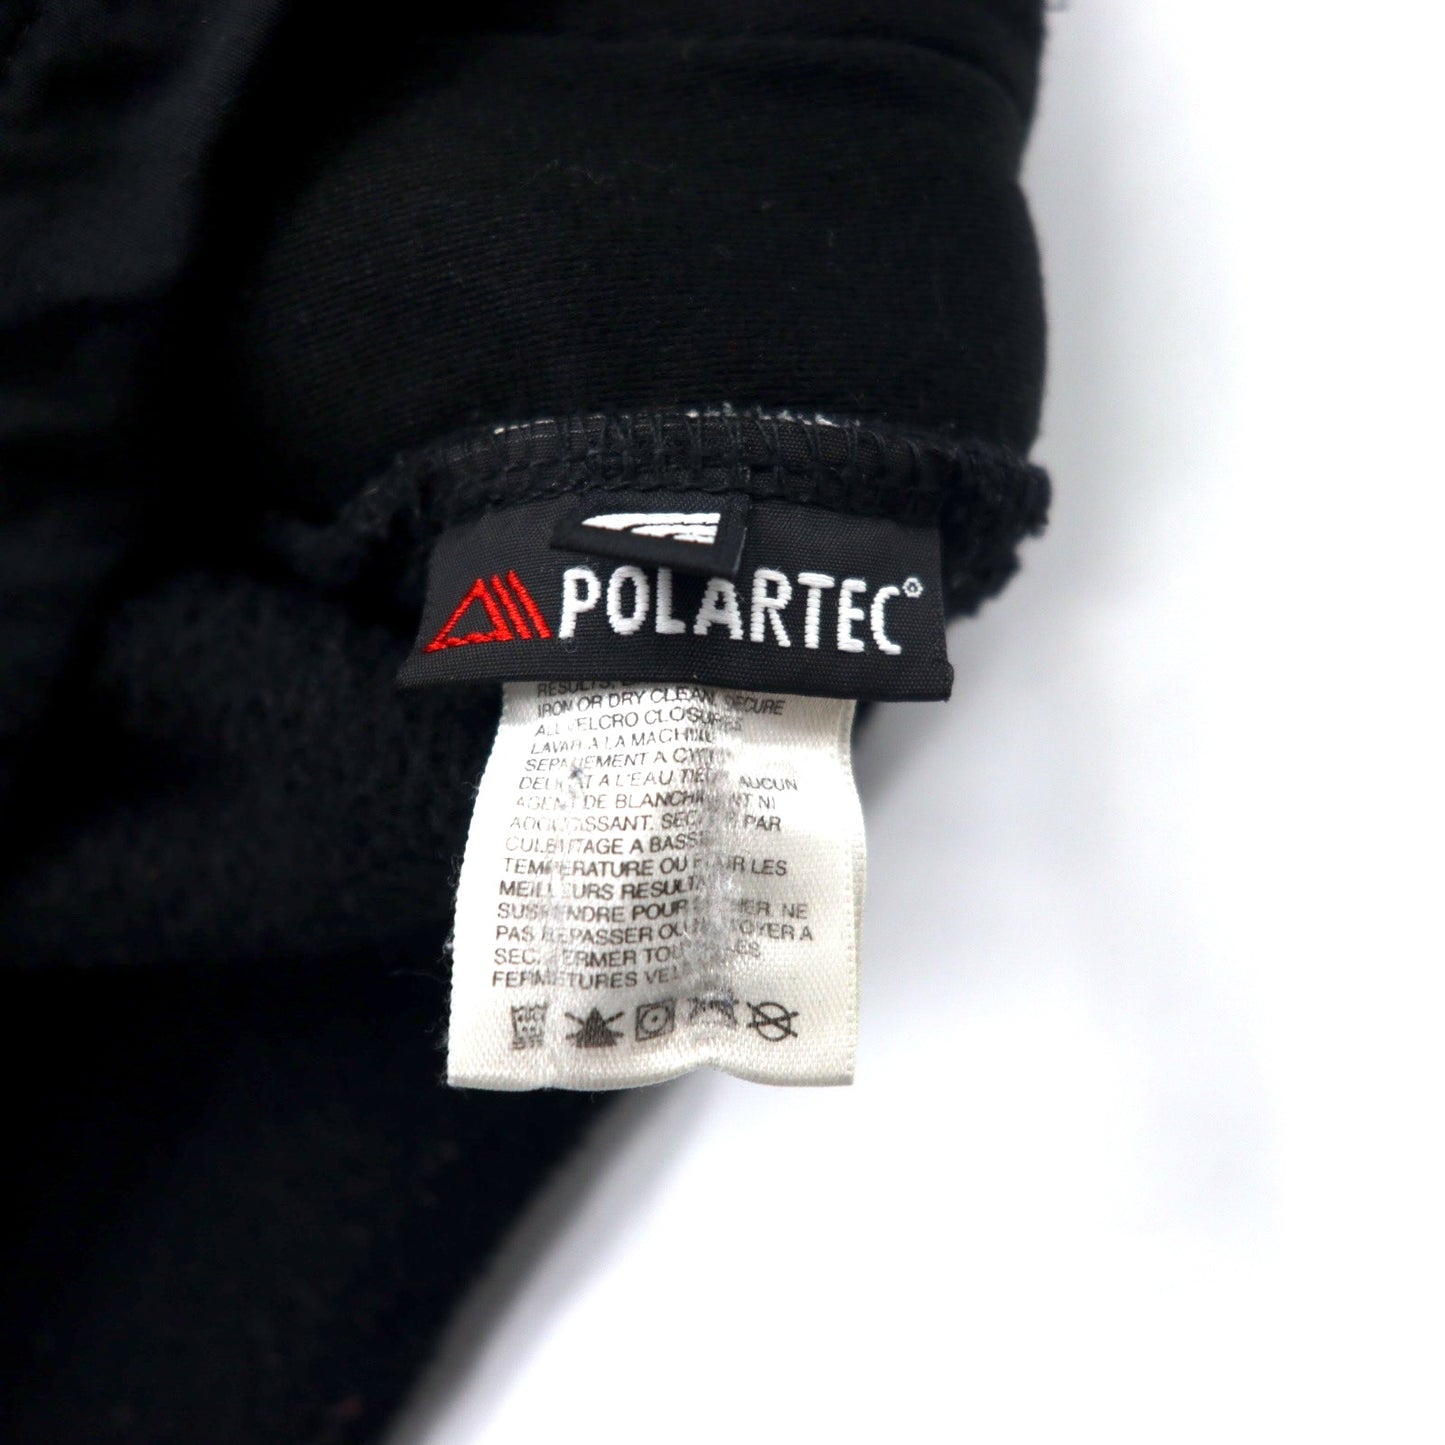 THE NORTH FACE デナリジャケット POLARTEC フリース S ブラック ポリエステル ロゴ刺繍